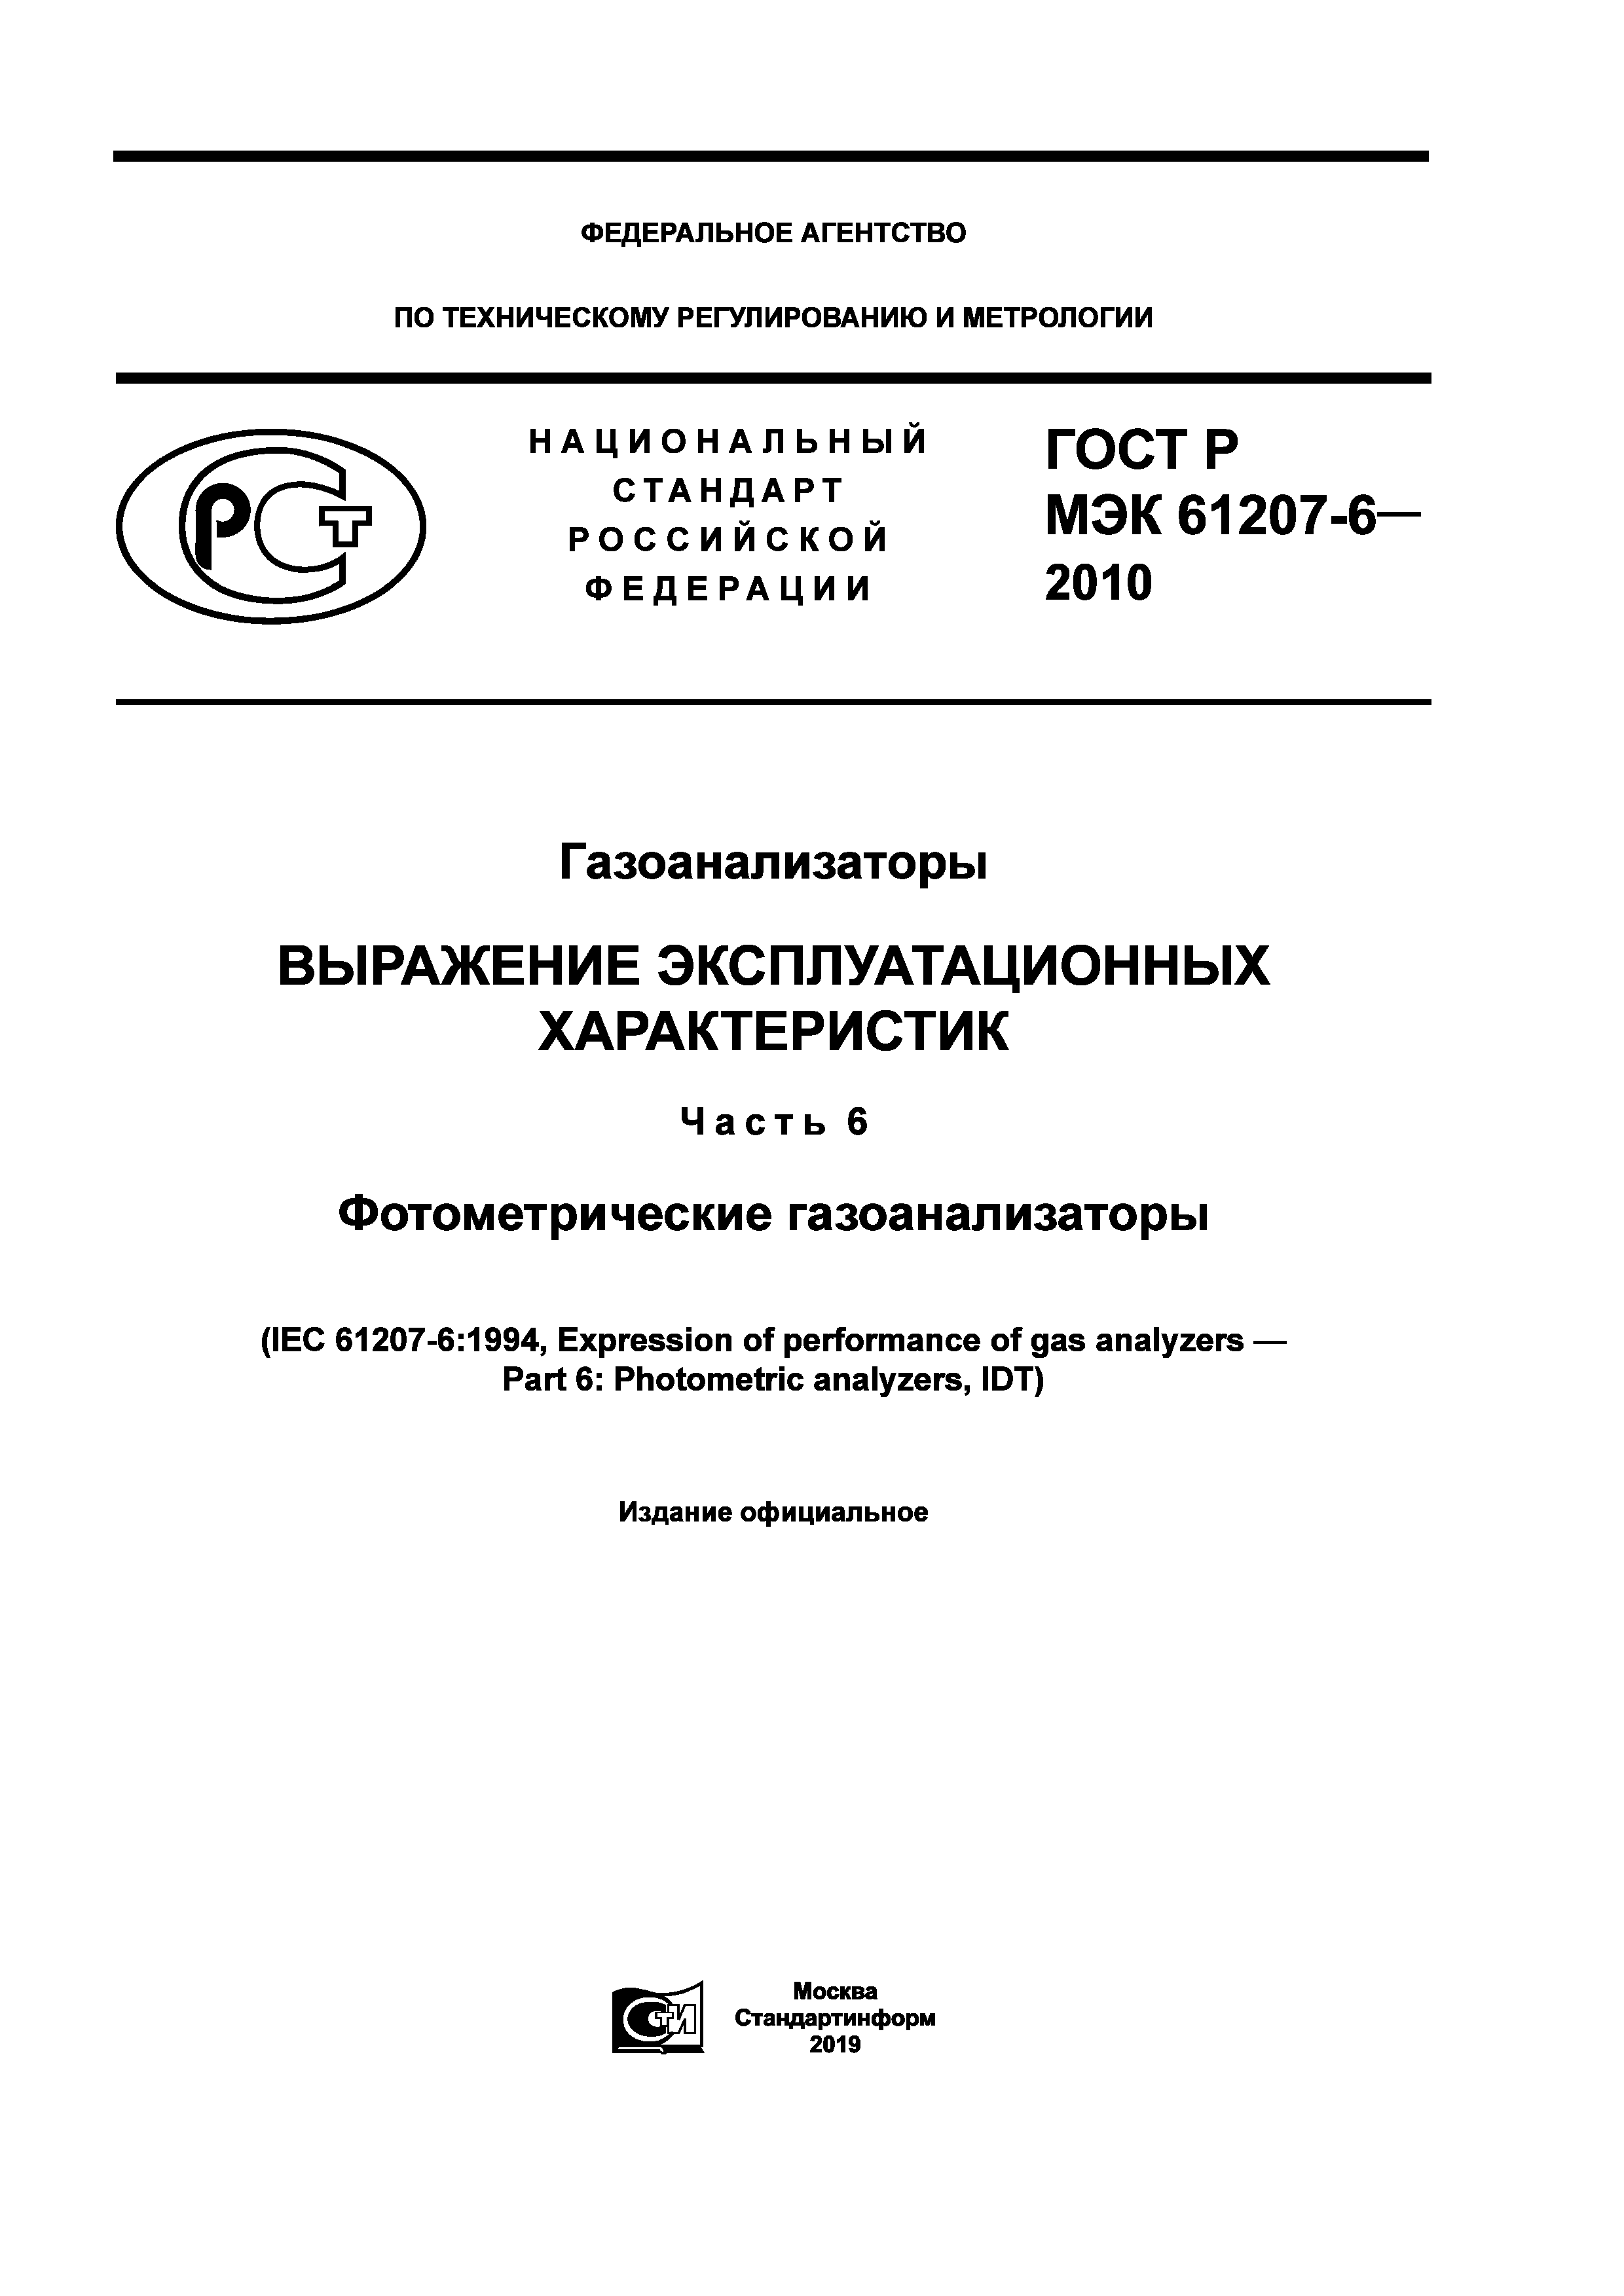 ГОСТ Р МЭК 61207-6-2010